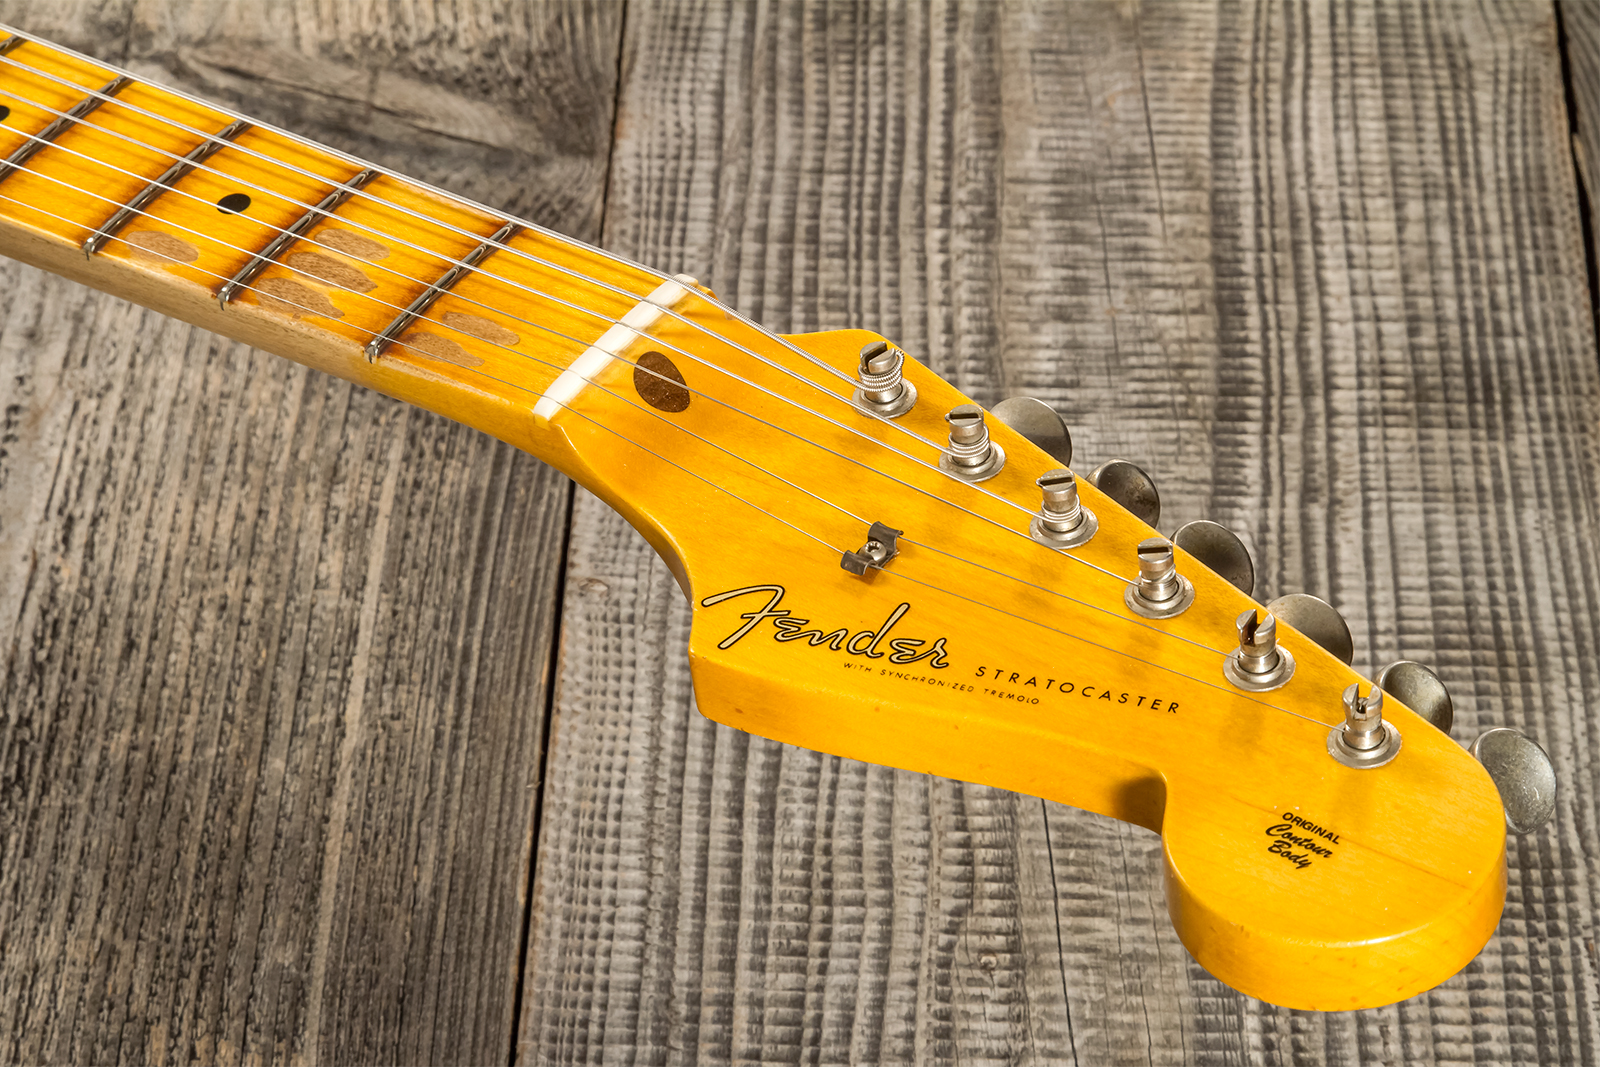 Fender Custom Shop Strat 1956 3s Trem Mn #cz570281 - Journeyman Relic Aged 2-color Sunburst - Str shape electric guitar - Variation 6